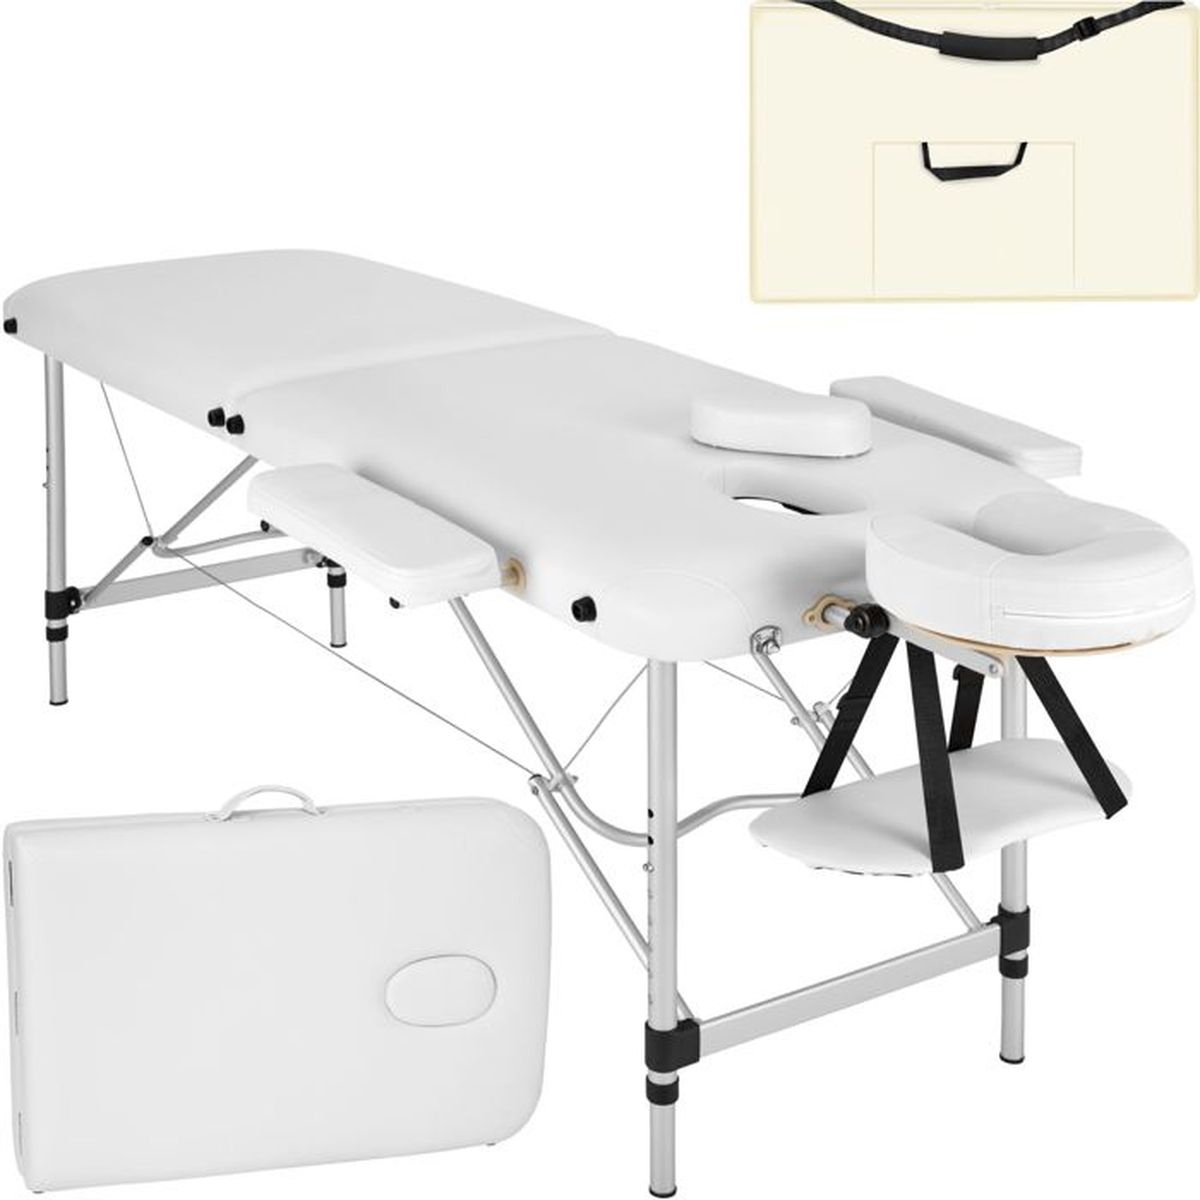 Tectake Table De Massage Pliante Portable 2 Zones En Aluminium Blanc Housse Achat Vente 